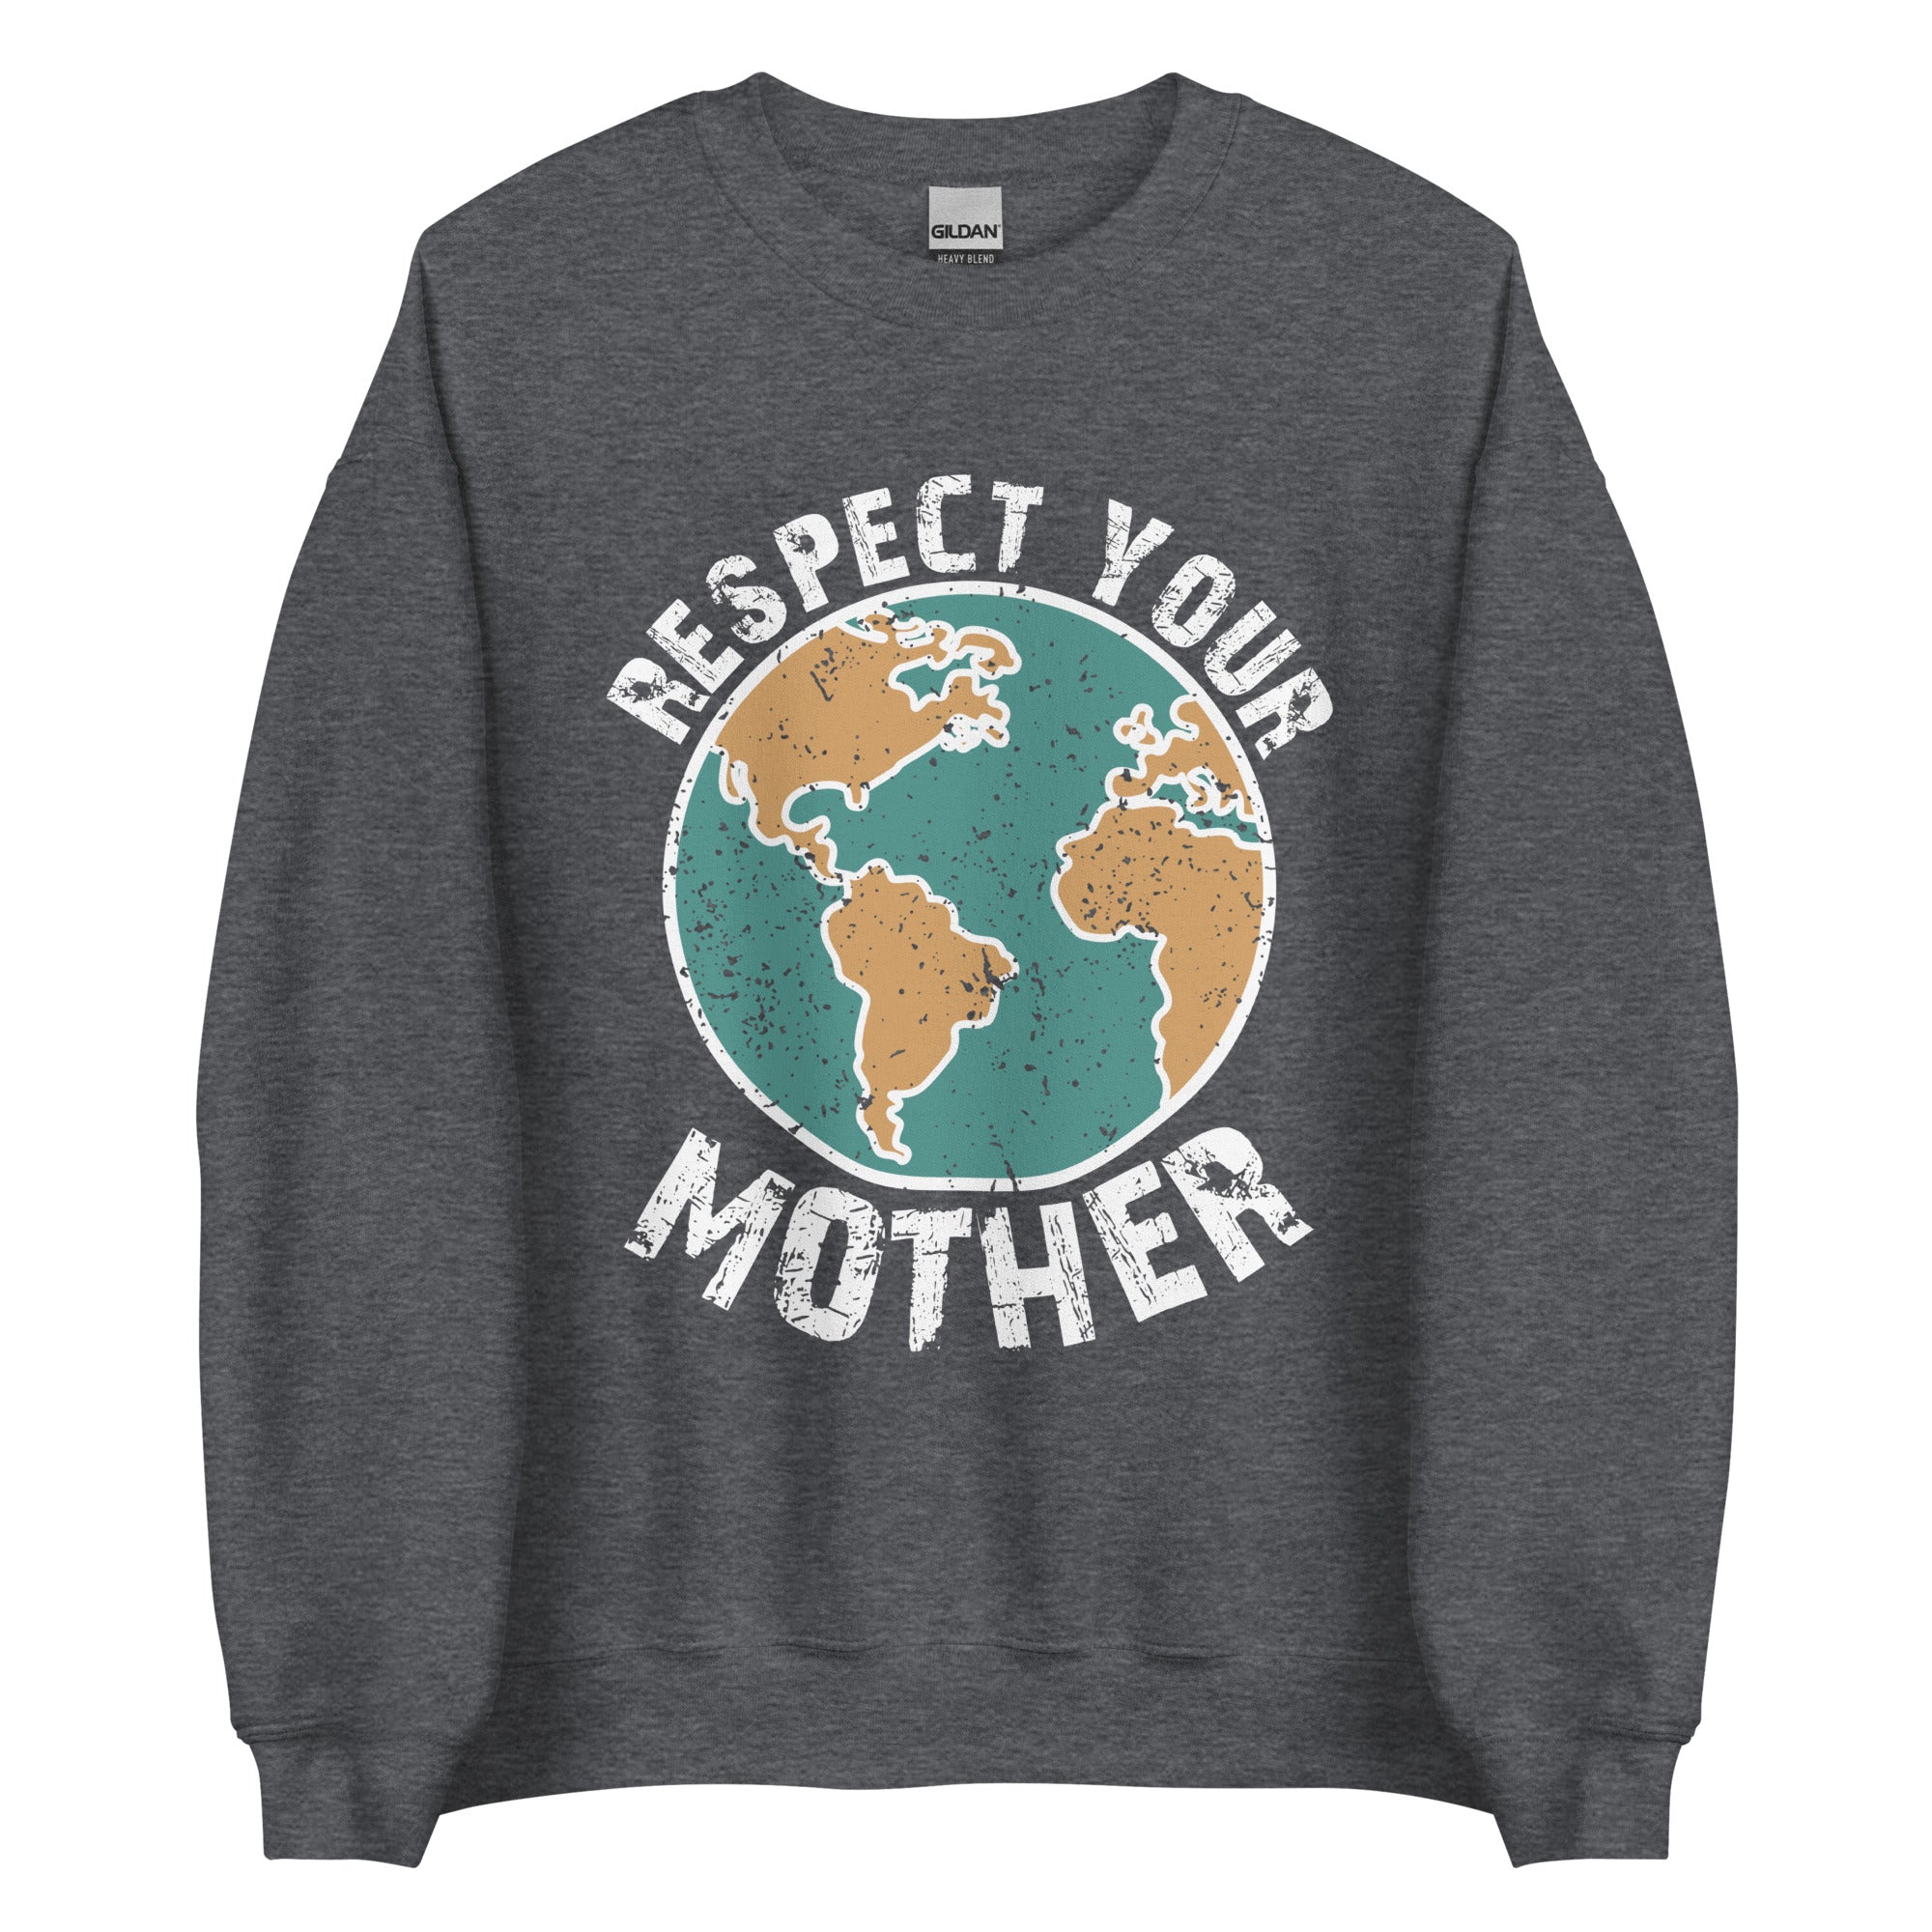 Respect Your Mother Men's Sweatshirt